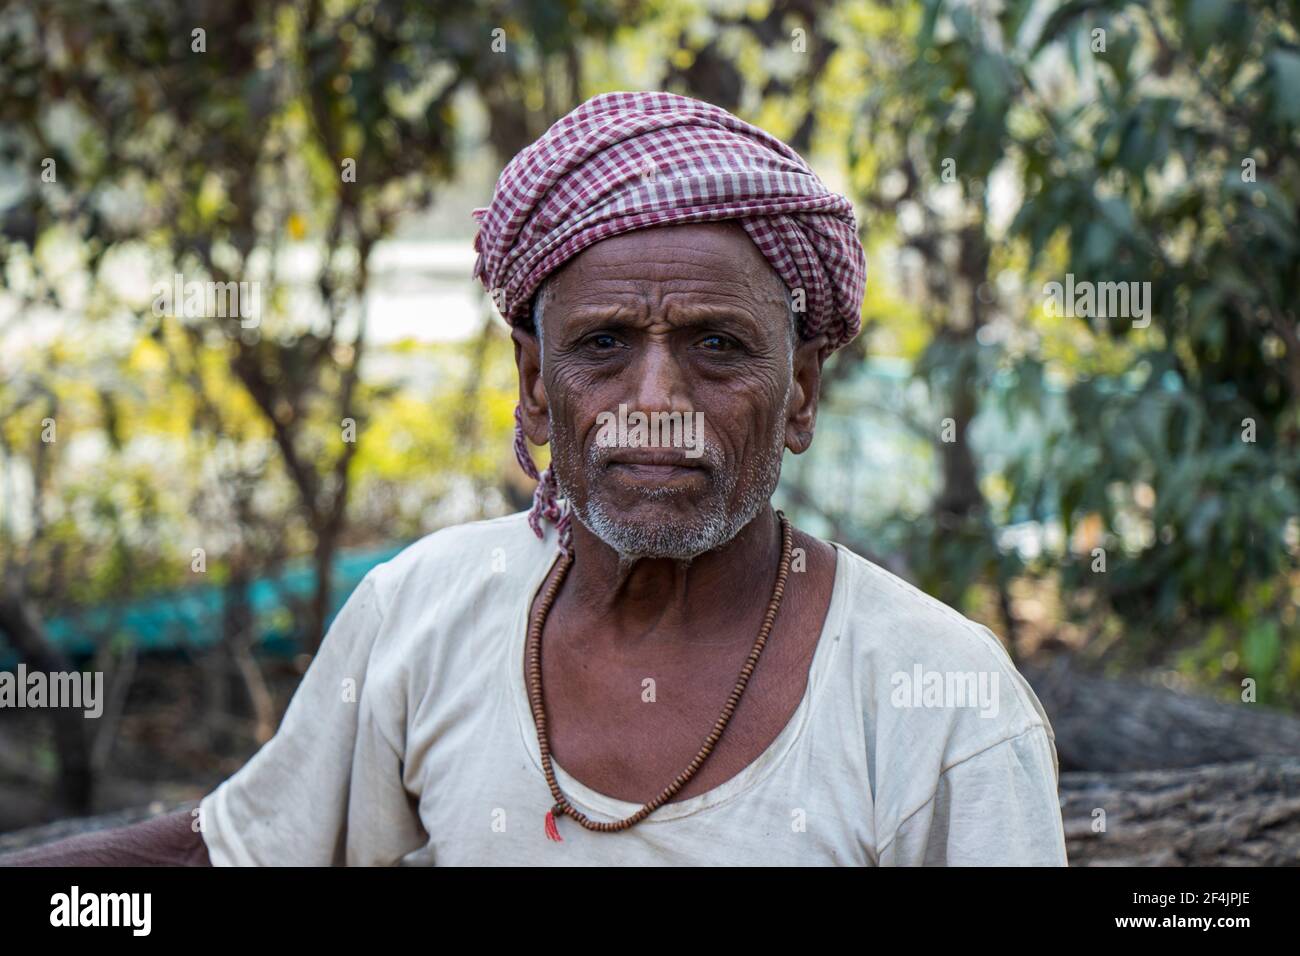 Ein indisches Farmerporträt mit Blick auf die Kamera - Begusarai, Bihar, Indien - 20-01-2021 Stockfoto